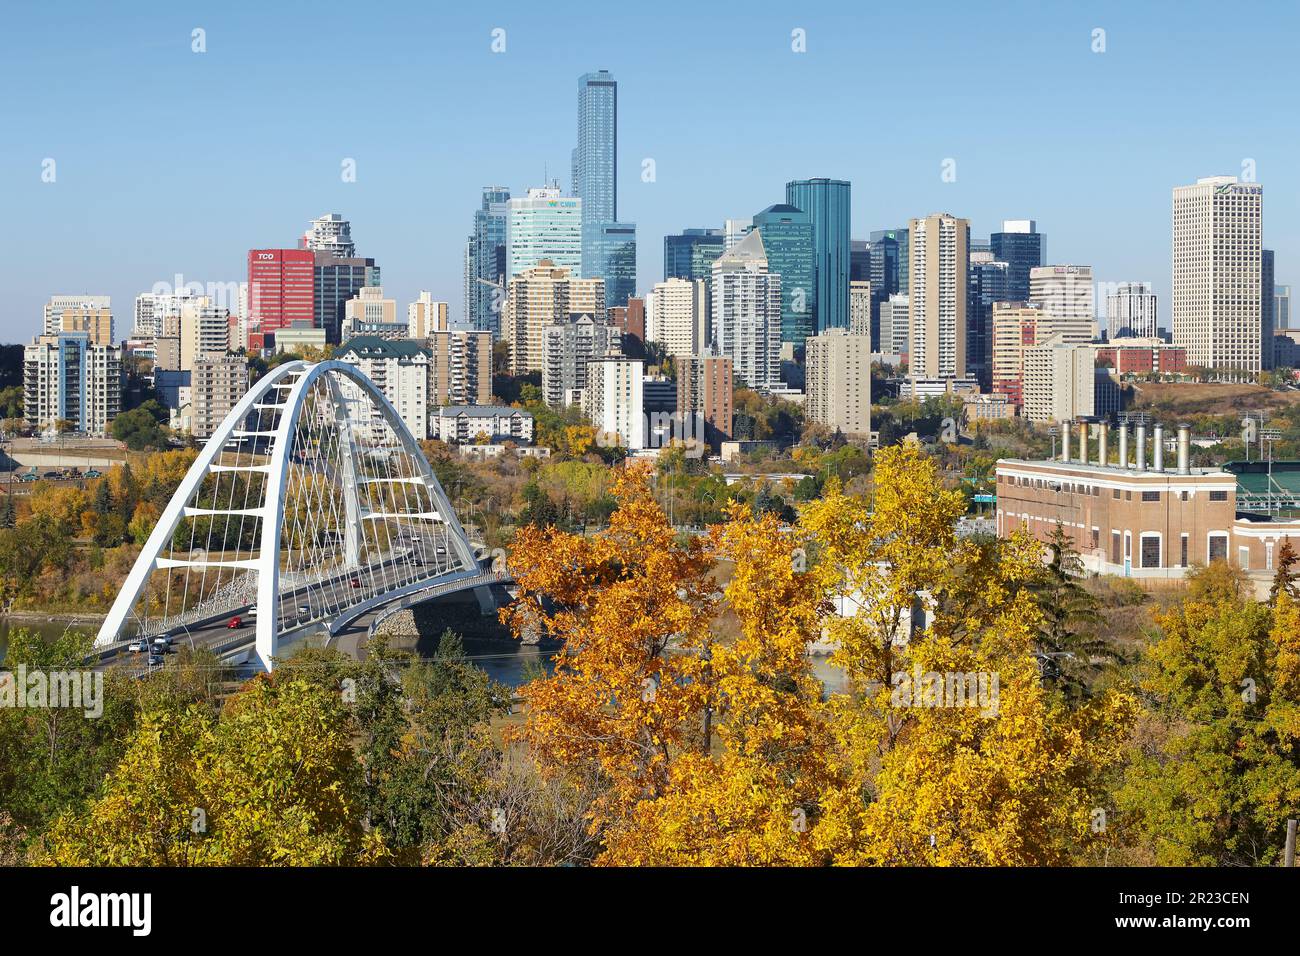 An autumn cityscape of Edmonton, Alberta, Canada. Stock Photo